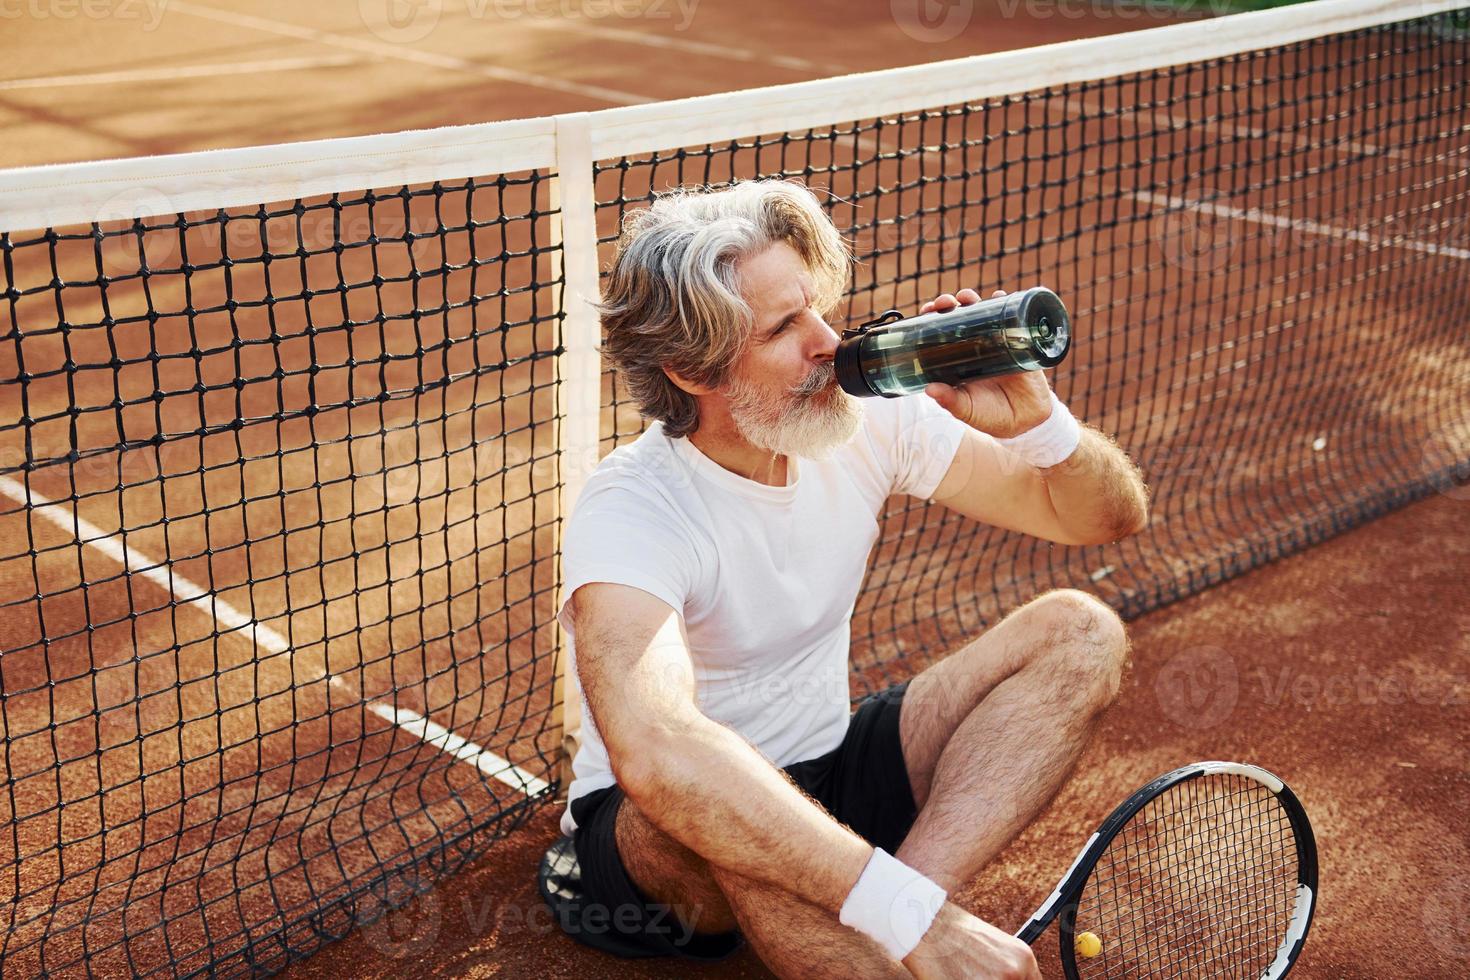 potabile acqua e seduta su il terra. anziano moderno elegante uomo con racchetta all'aperto su tennis Tribunale a giorno foto